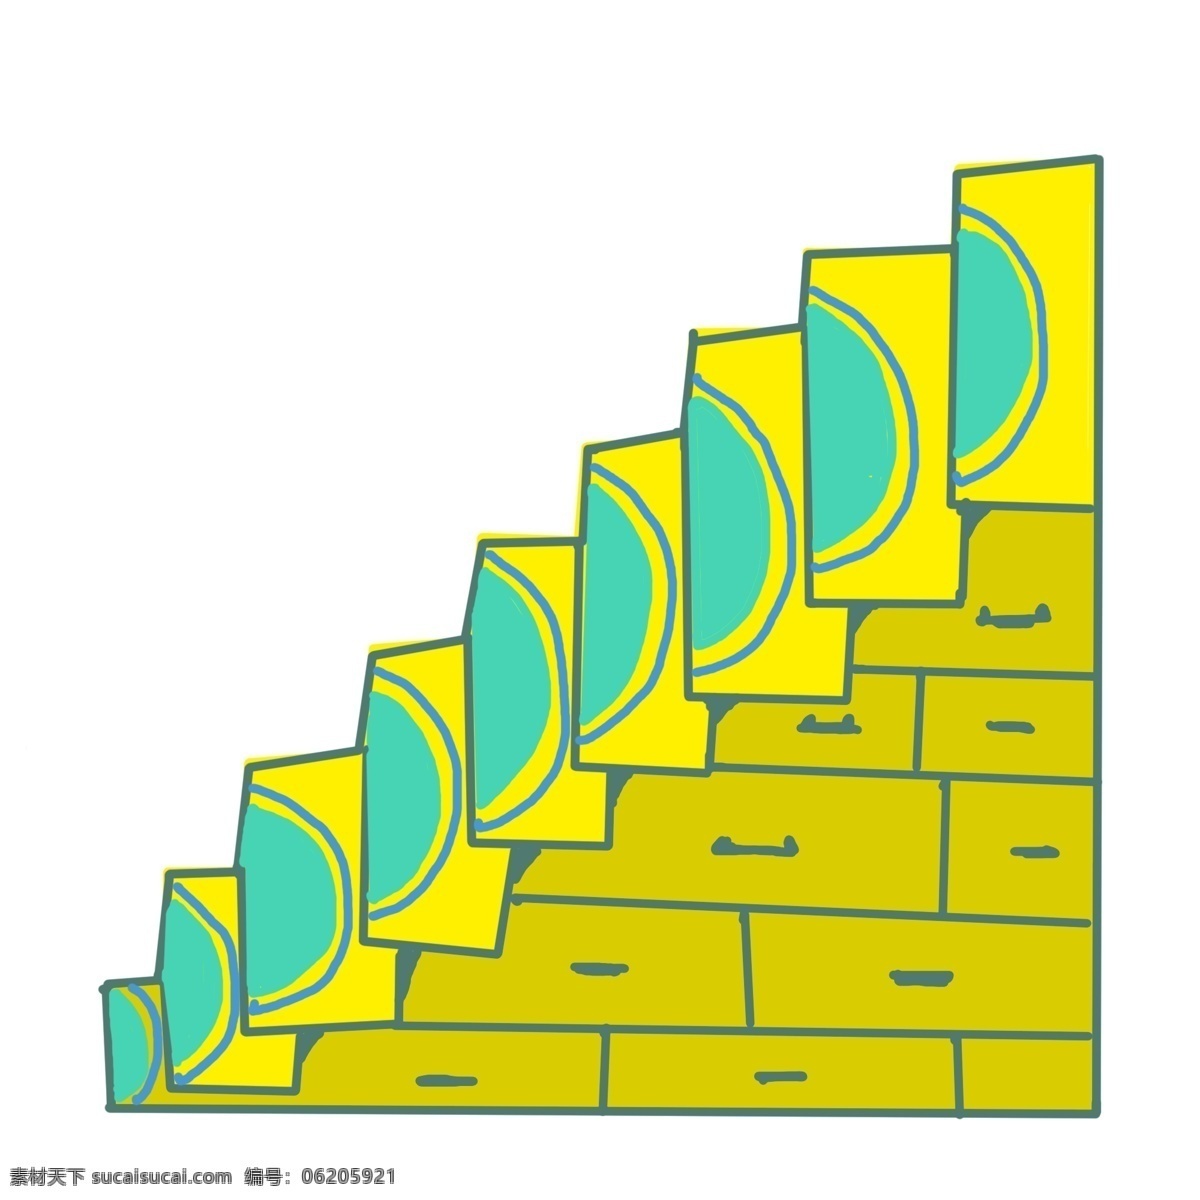 黄色 简约 楼梯 插图 绿色装饰 卡通楼梯 黄色楼梯 立体楼梯 楼梯插图 攀爬工具 登高楼梯 楼梯设计